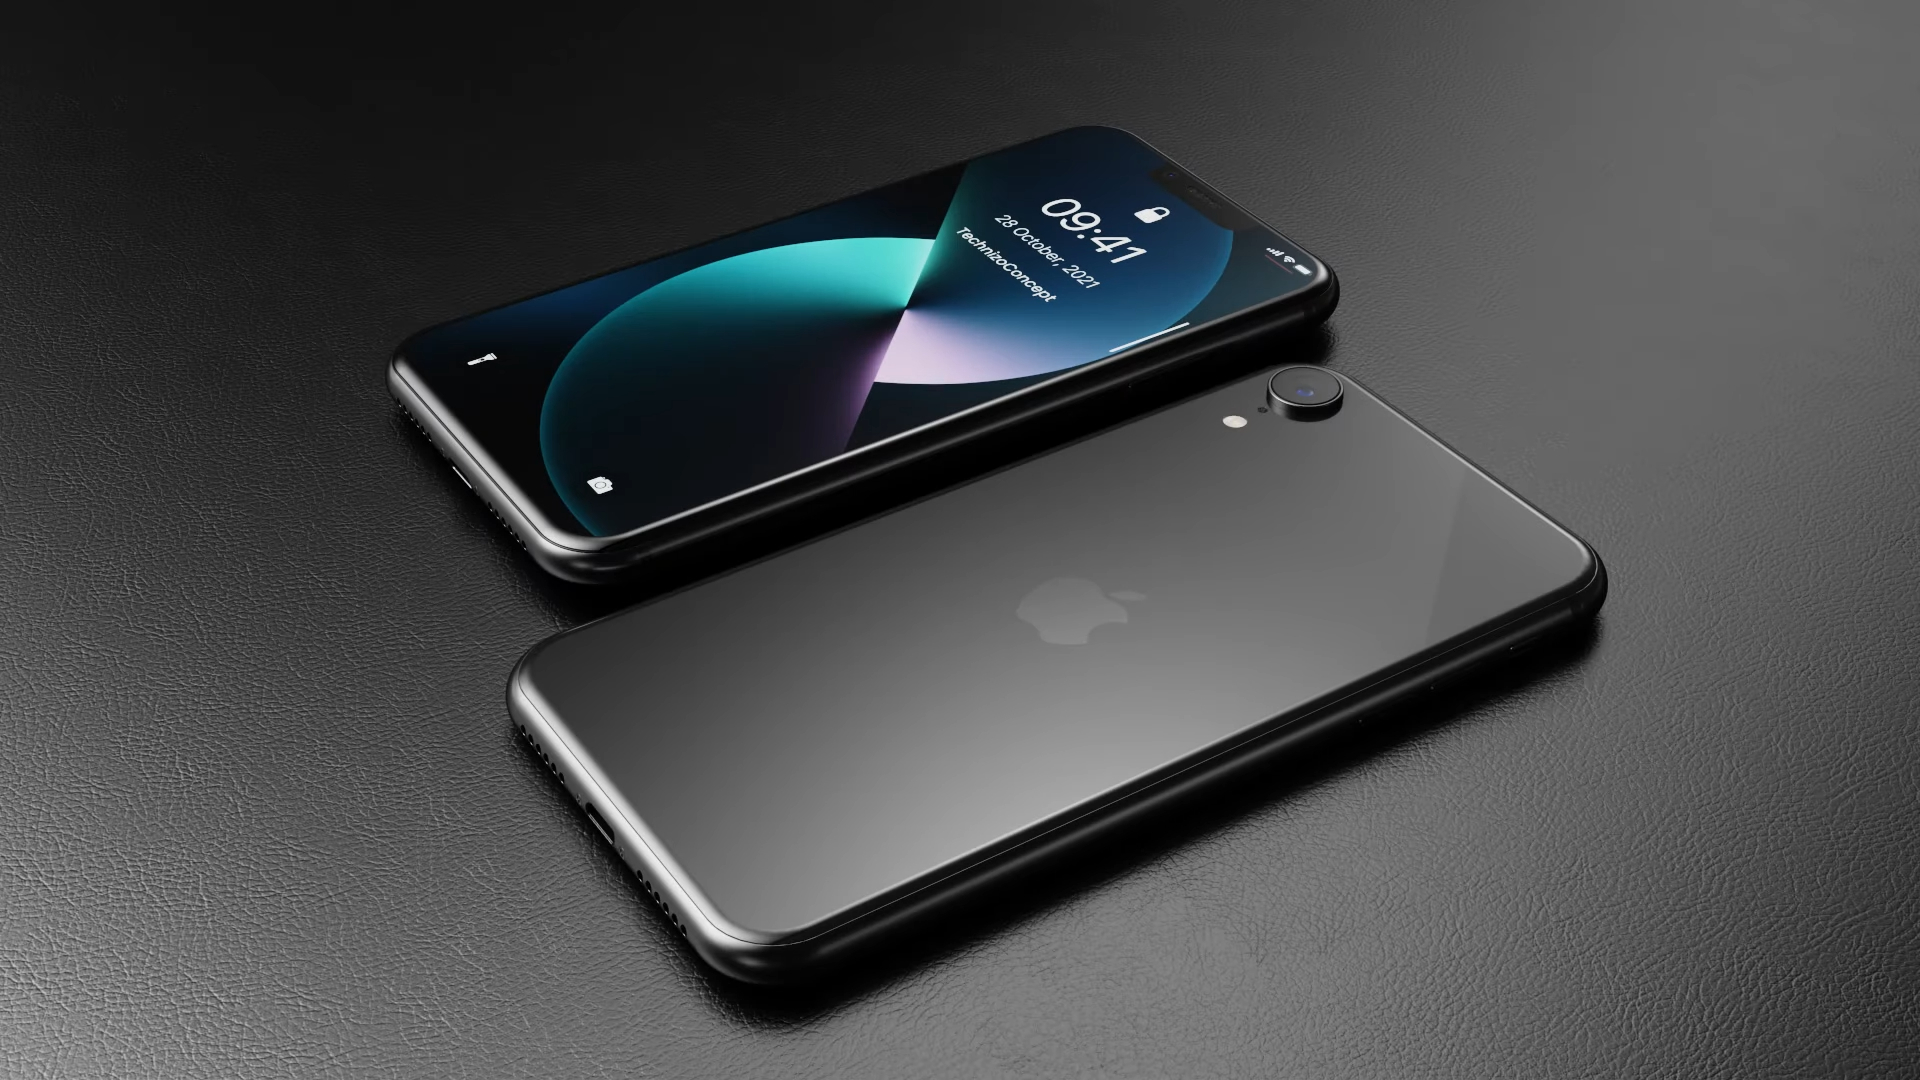 Bất ngờ mẫu iPhone mới sắp ra mắt giá chỉ từ 9 triệu đồng nhưng vẫn sang chảnh miễn chê? - Ảnh 5.